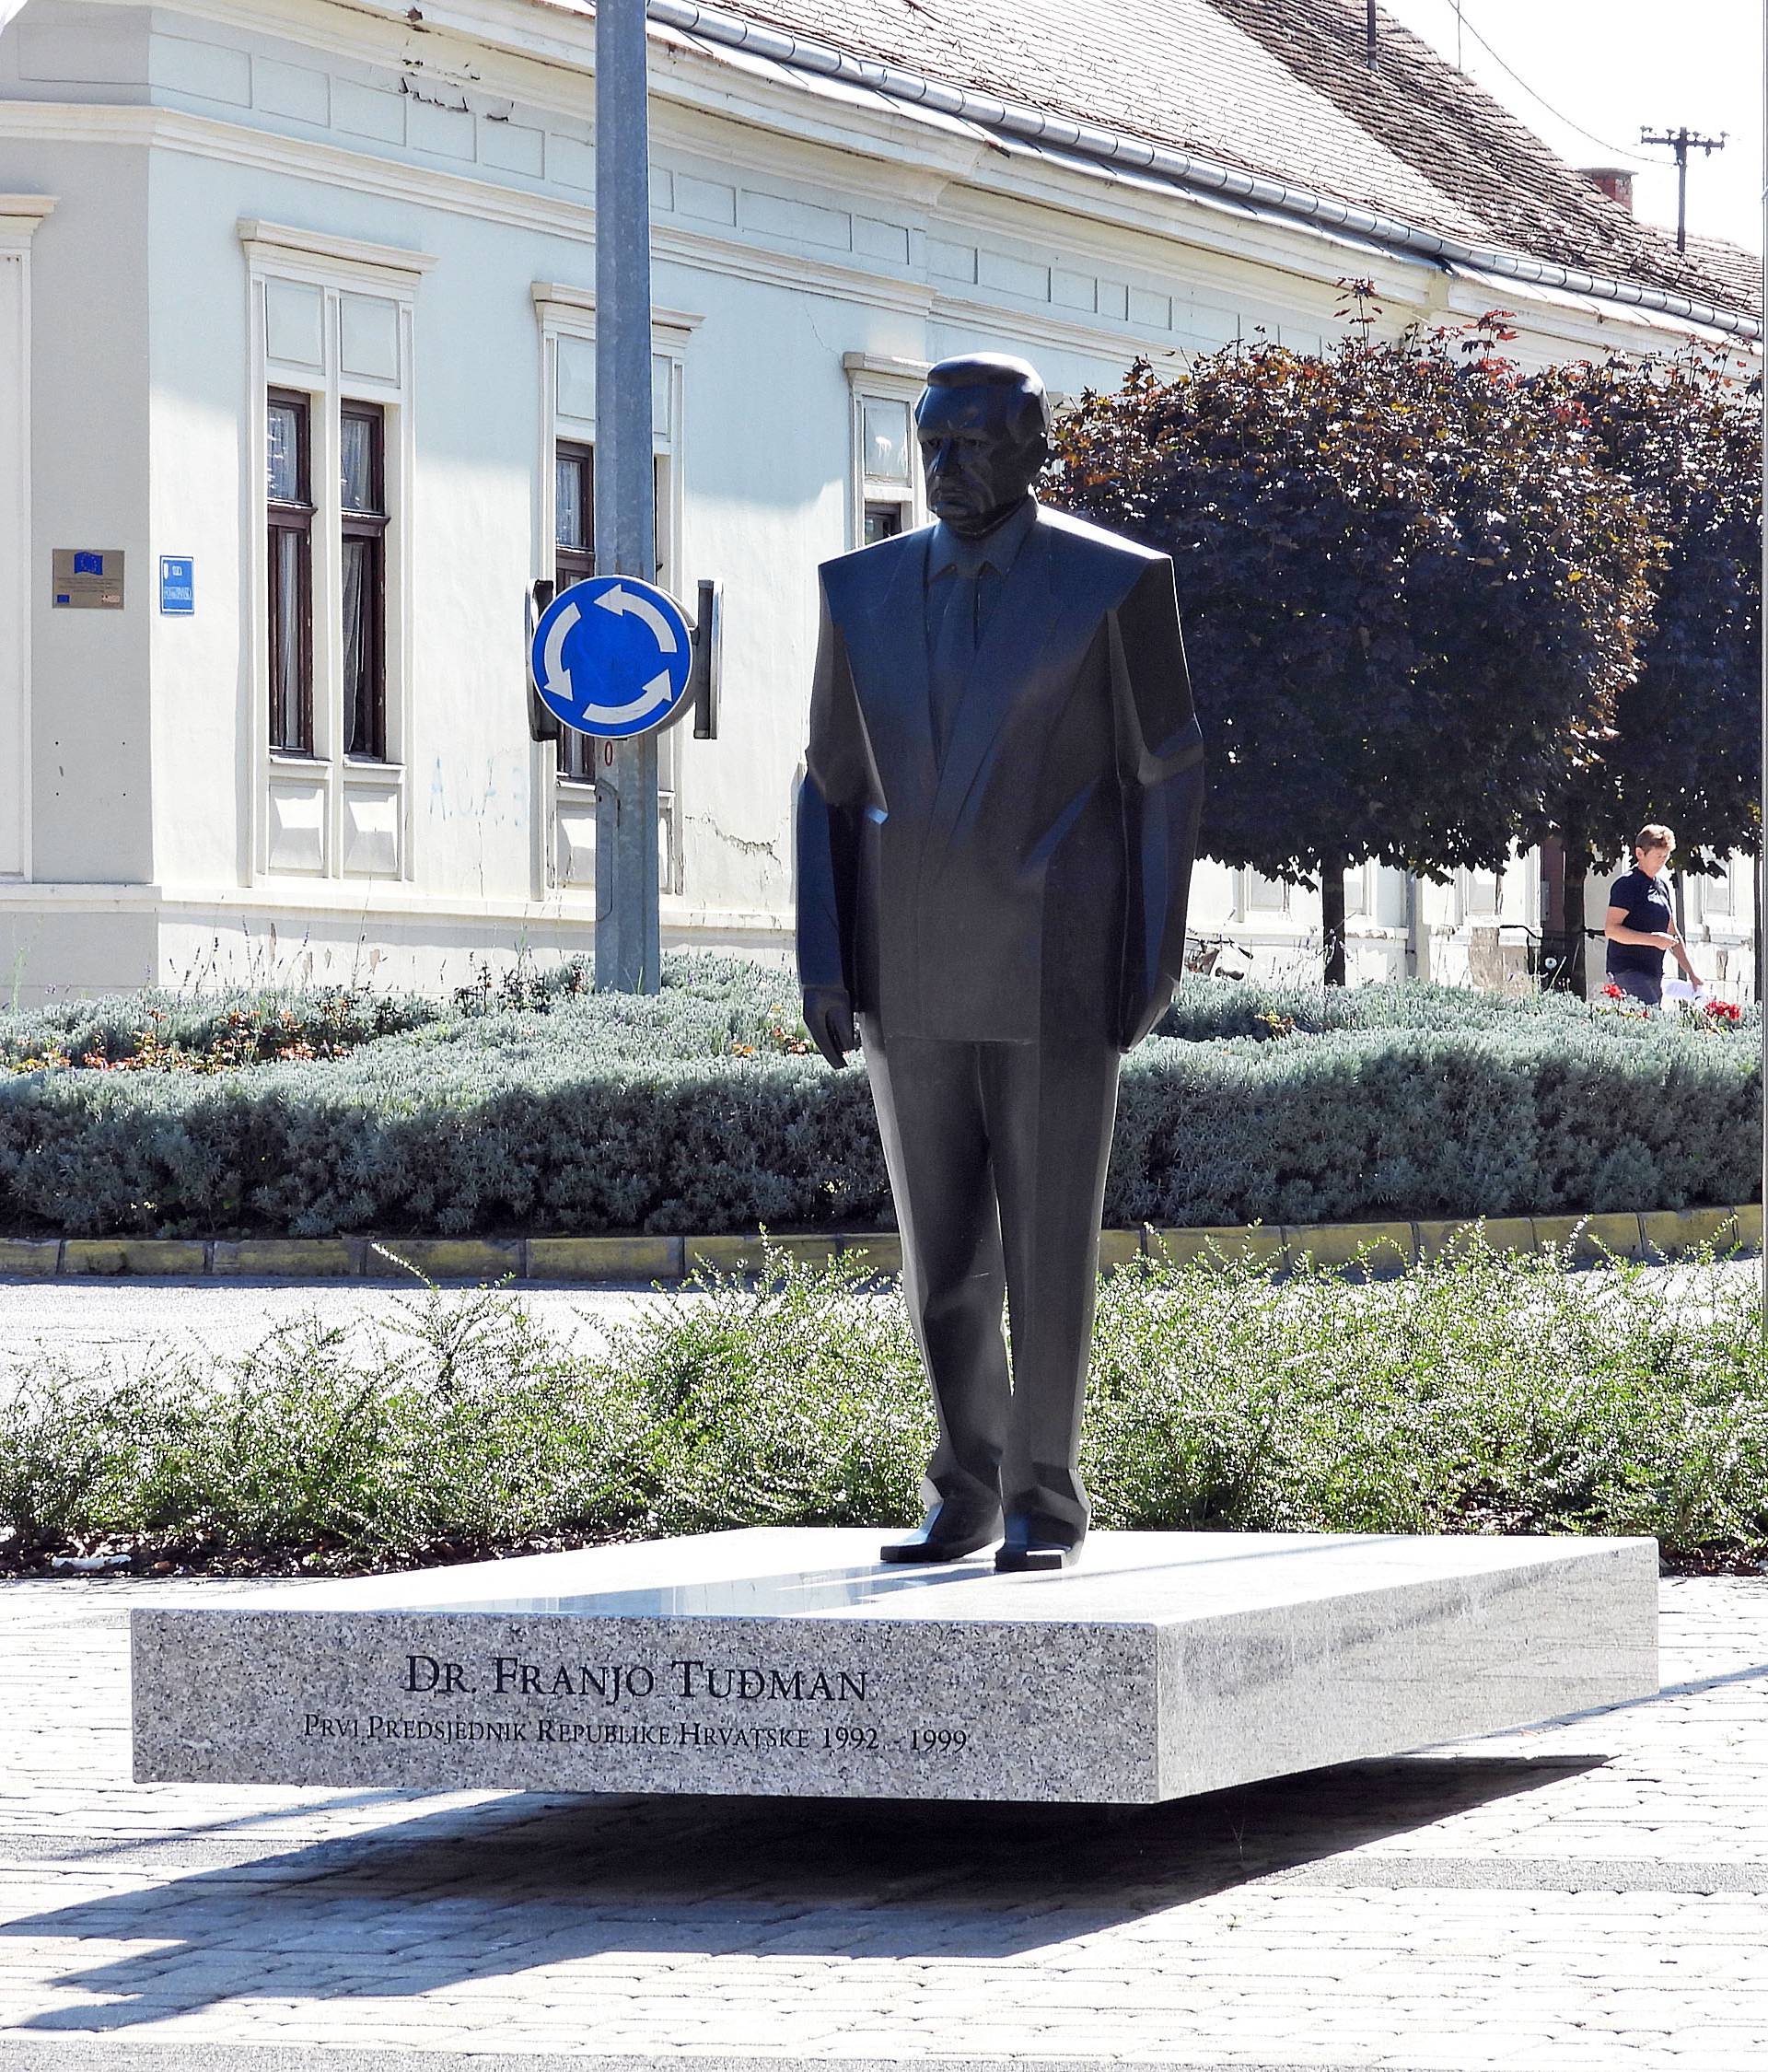 Glina prije potresa: Grad se raspadao, ali se potrošilo preko 500.000 kn na Tuđmanov kip